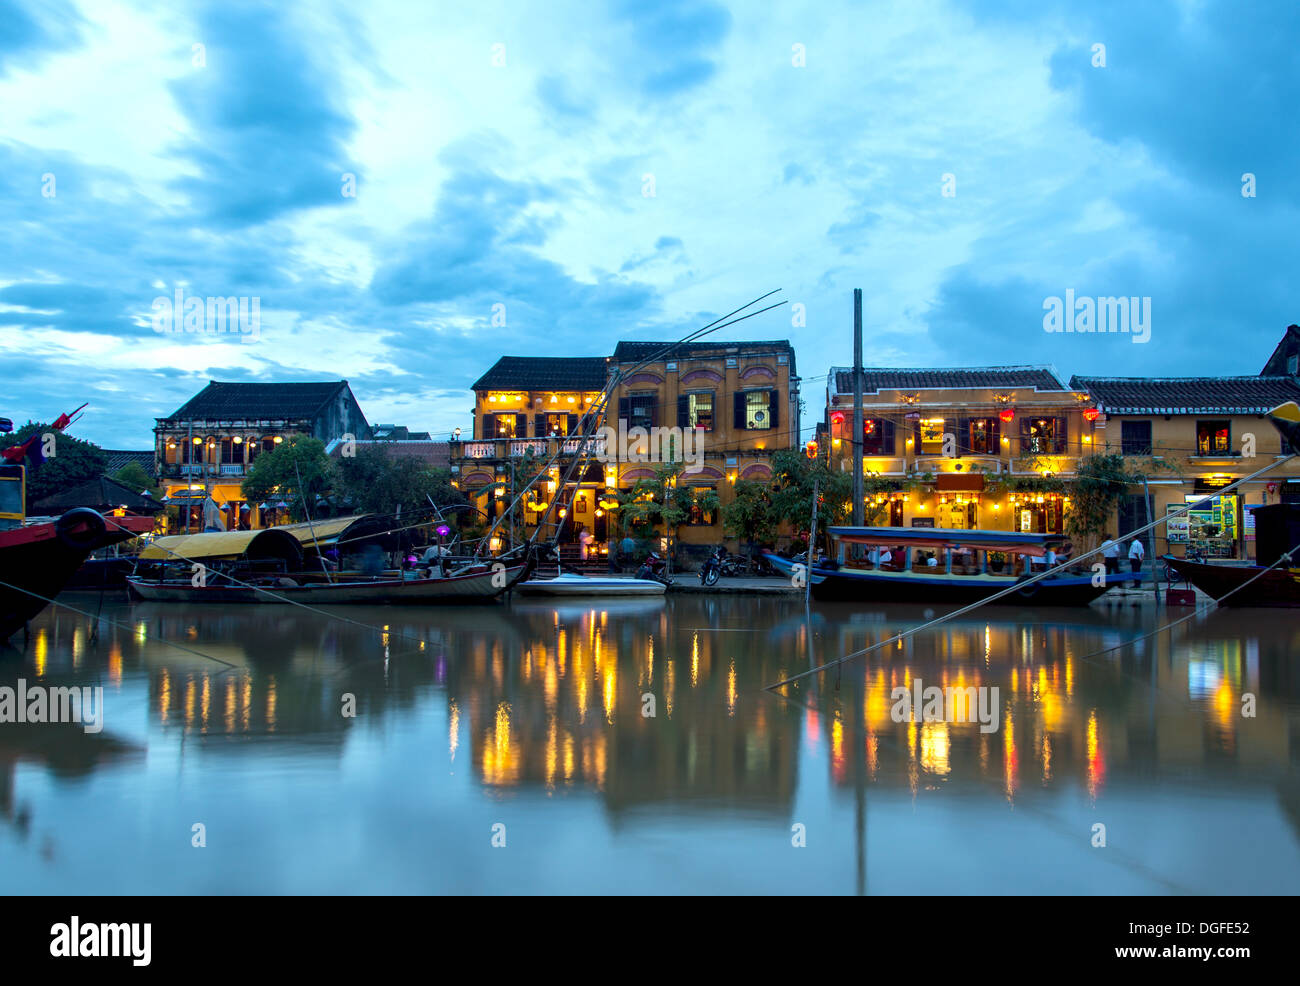 Hoi An riverside au Vietnam au crépuscule Banque D'Images